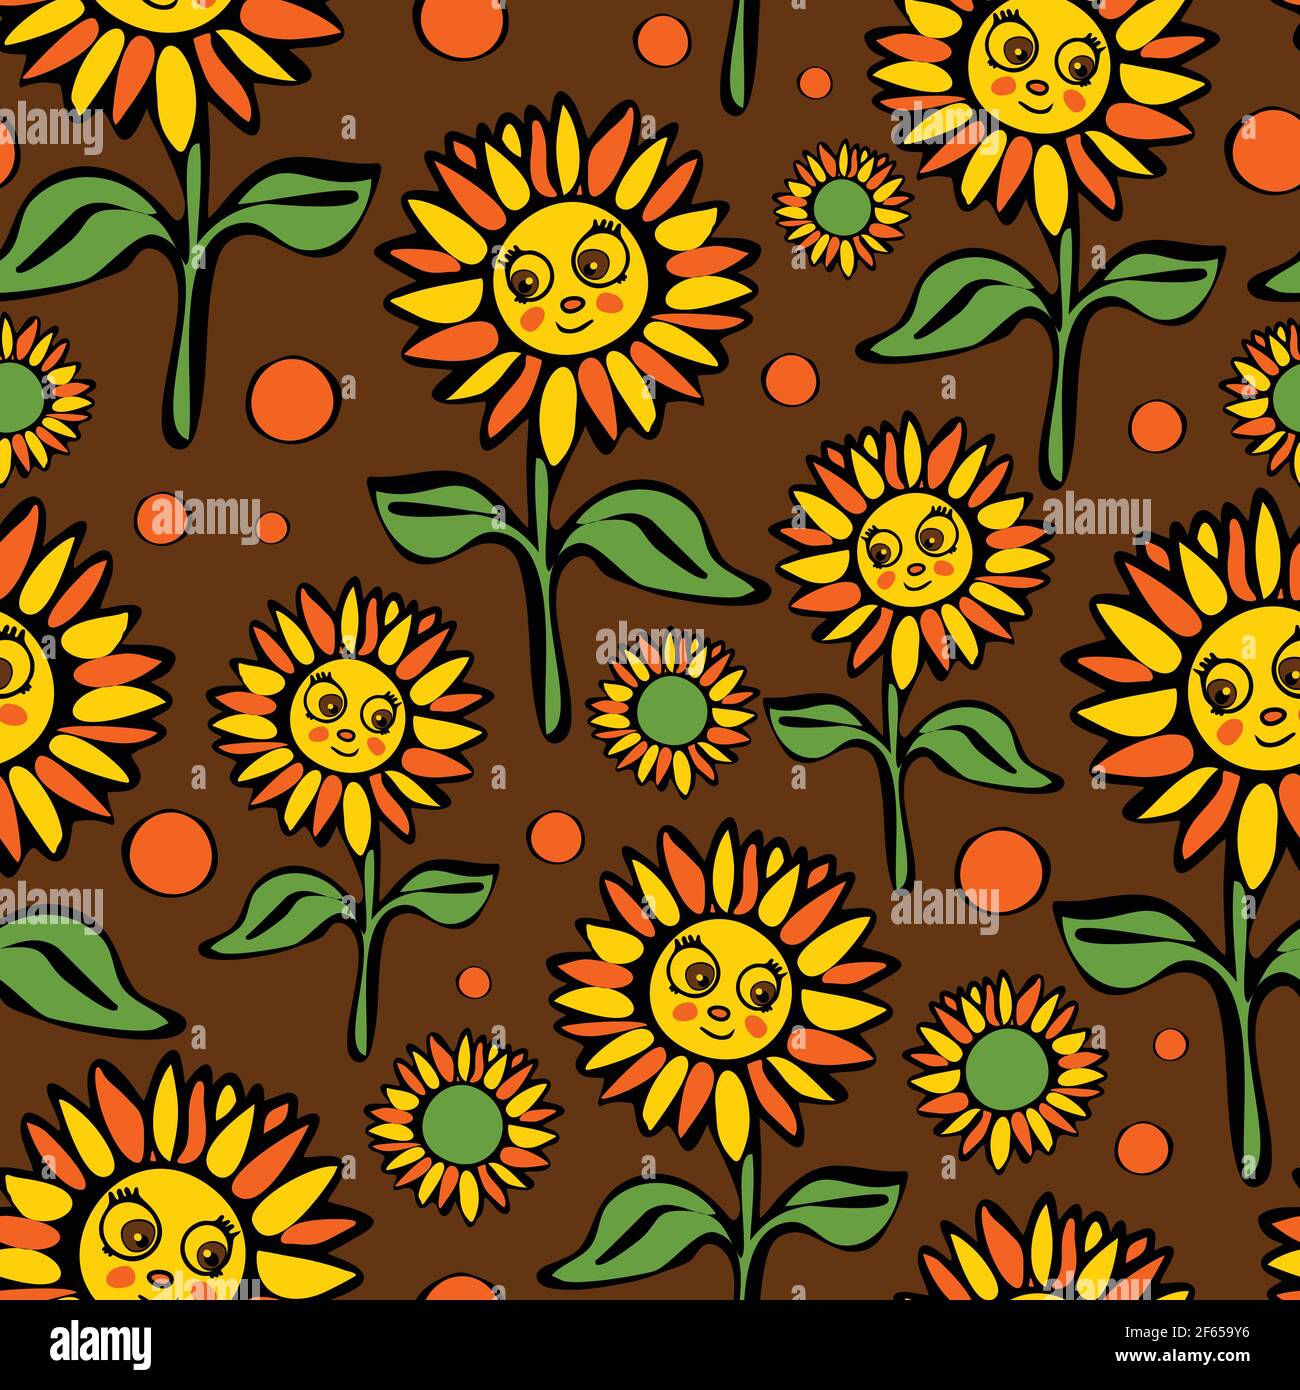 Nahtlose Vektor-Muster mit Cartoon Sonnenblumen auf braunem Hintergrund. Smiley Face Blume Tapete Design. Florale Mode im Retro-Stil. Stock Vektor